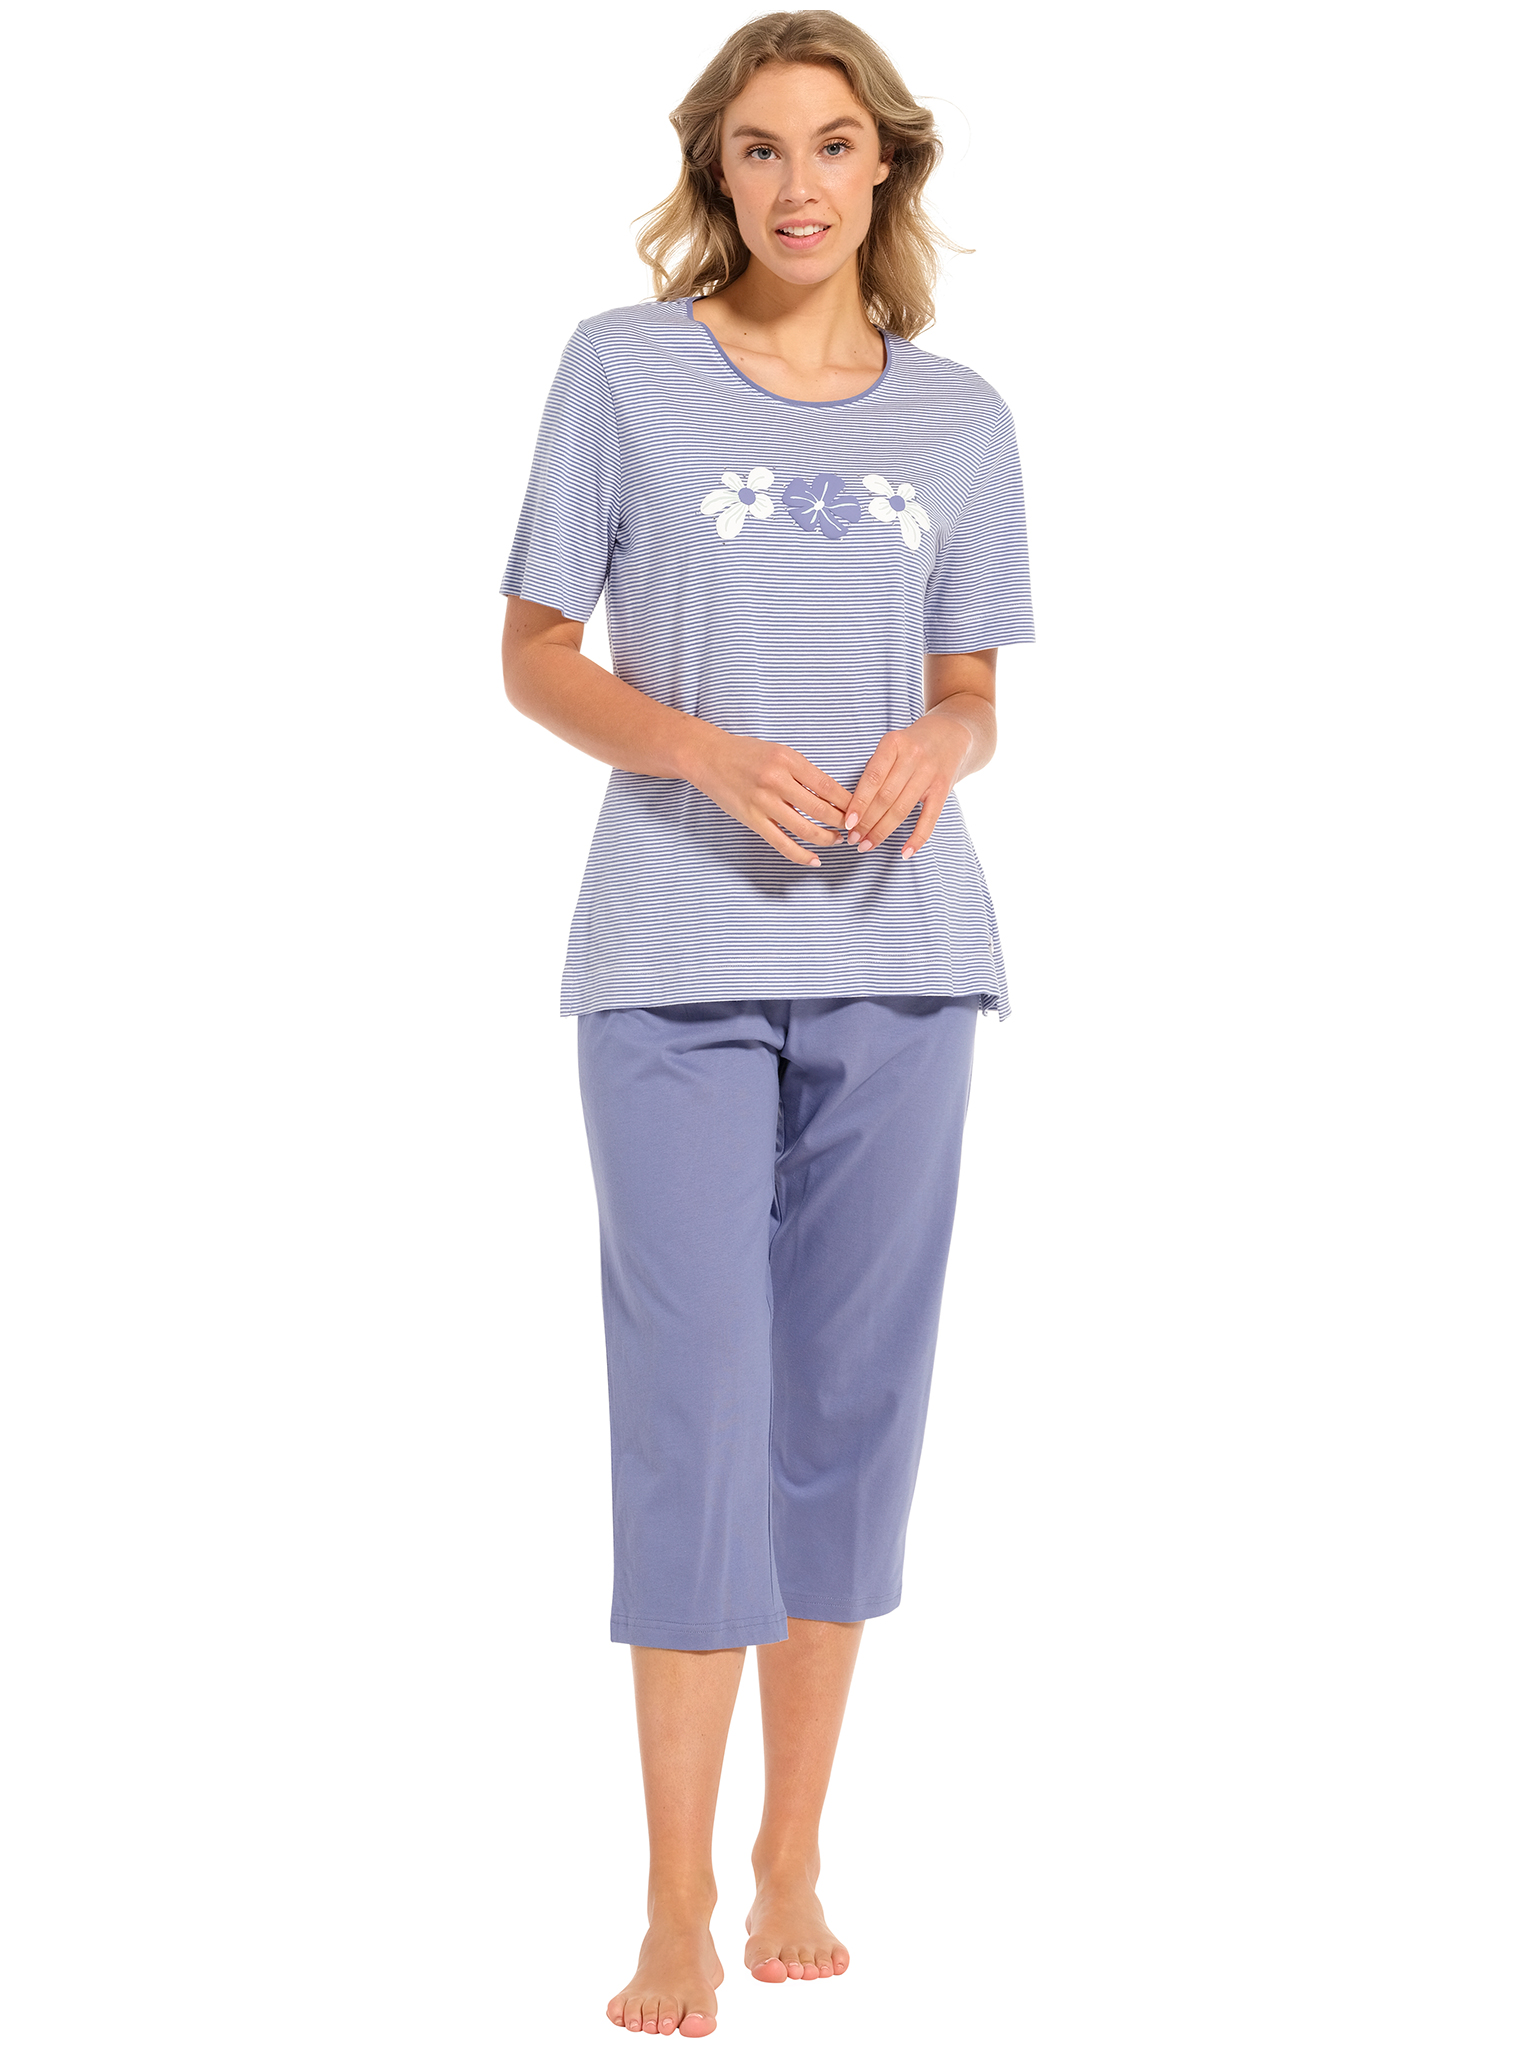 Pastunette - Blossoms - Dames Pyjamaset - Blauw - Organisch Katoen - Maat 38